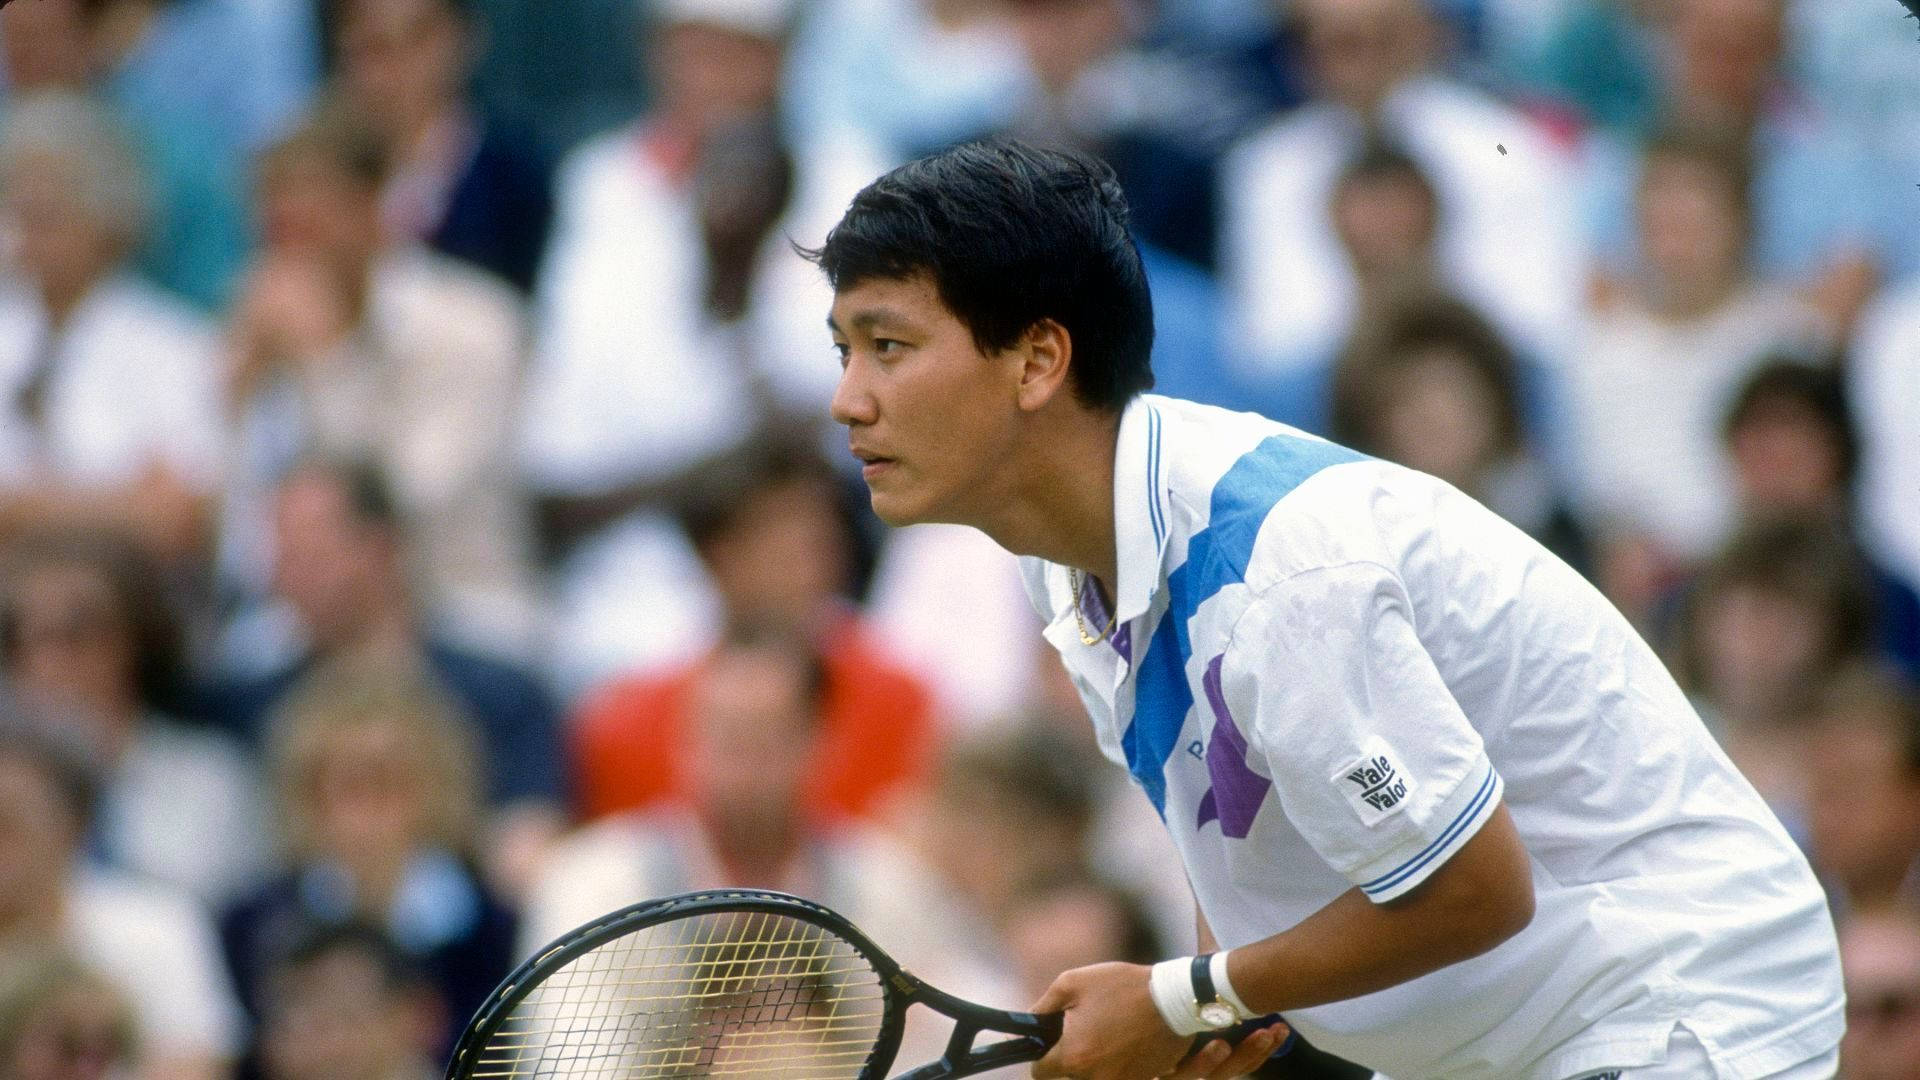 Michael Chan Tennis Focused Wallpaper